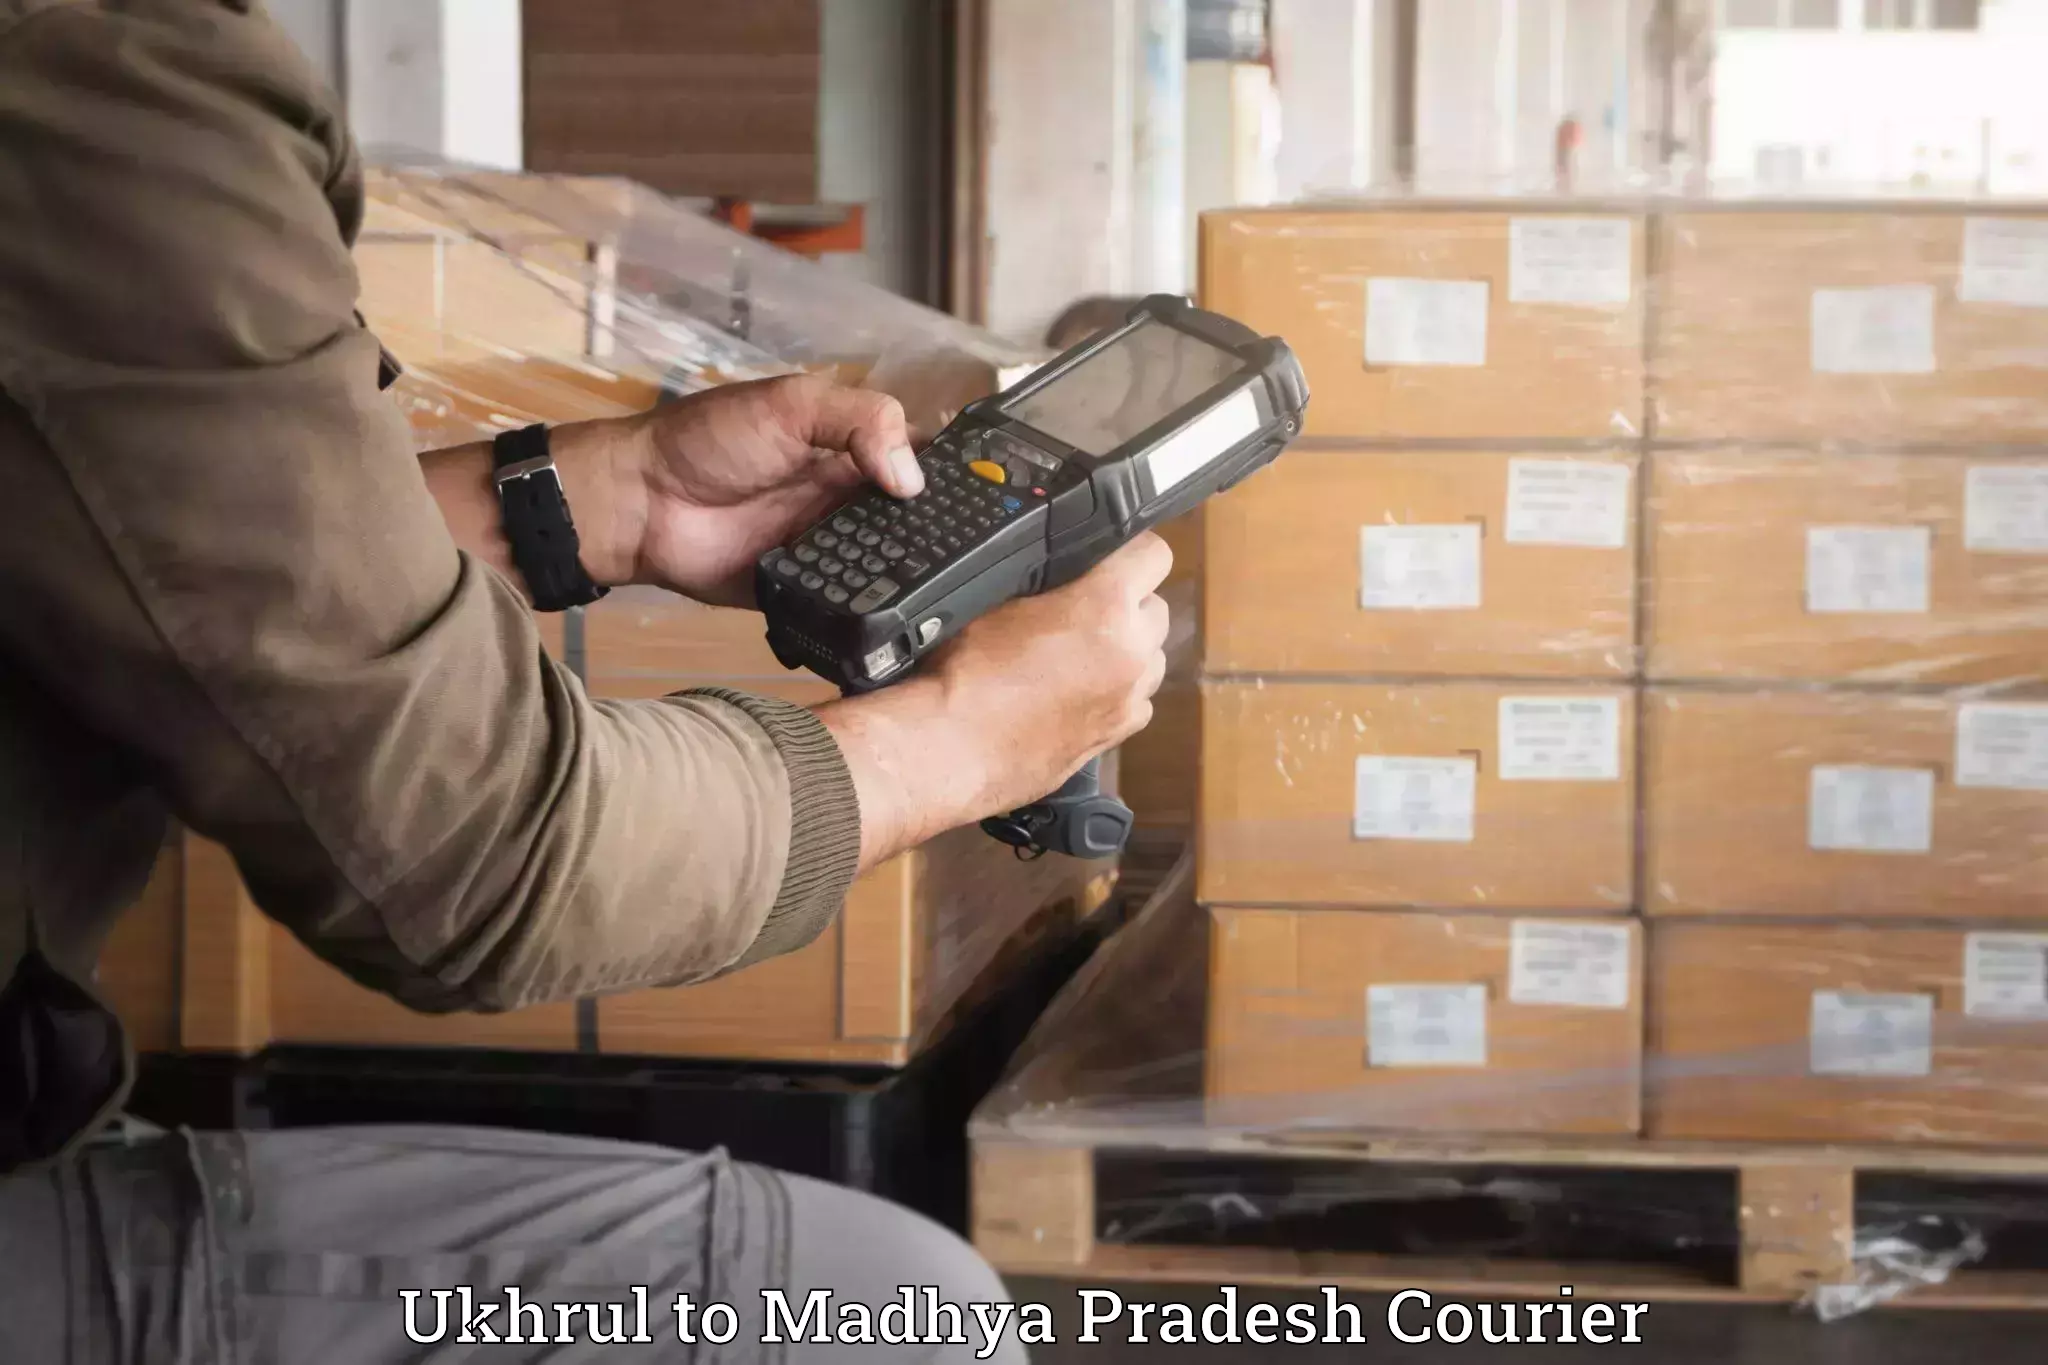 Luggage forwarding service Ukhrul to Mandla